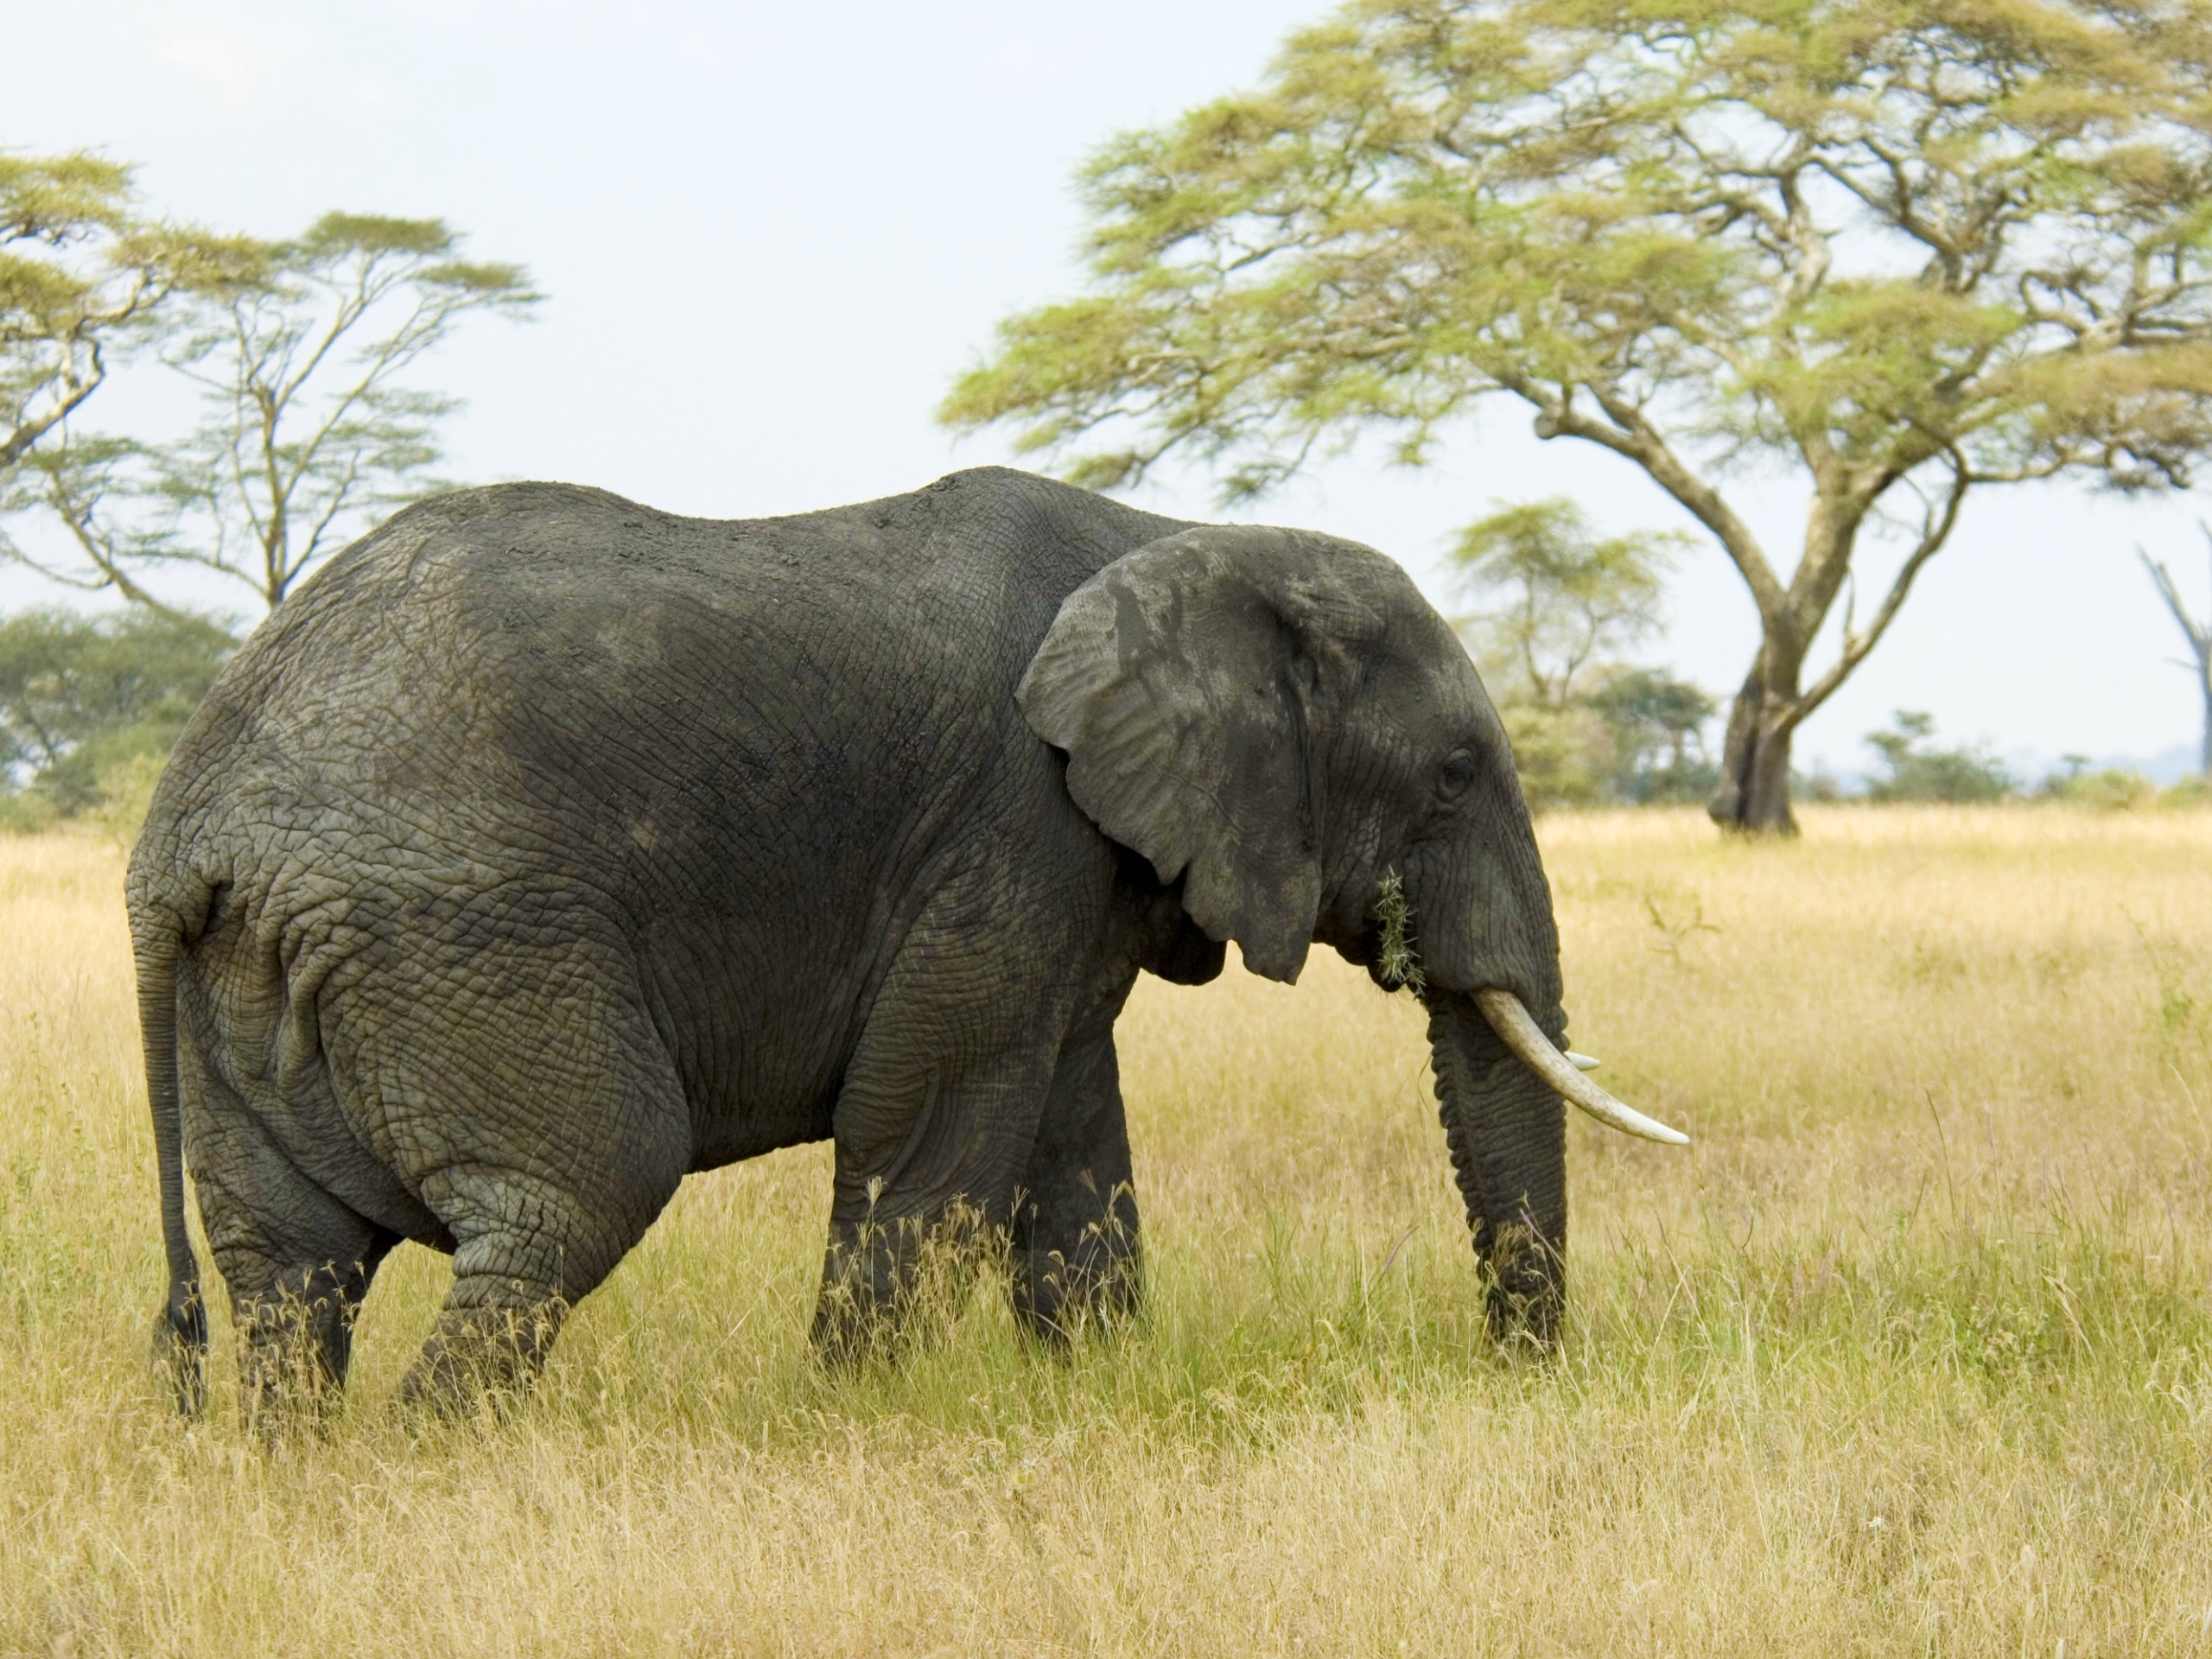 Скачать обои бесплатно Слон, Прогулка, Трава, Животные, Поле картинка на рабочий стол ПК